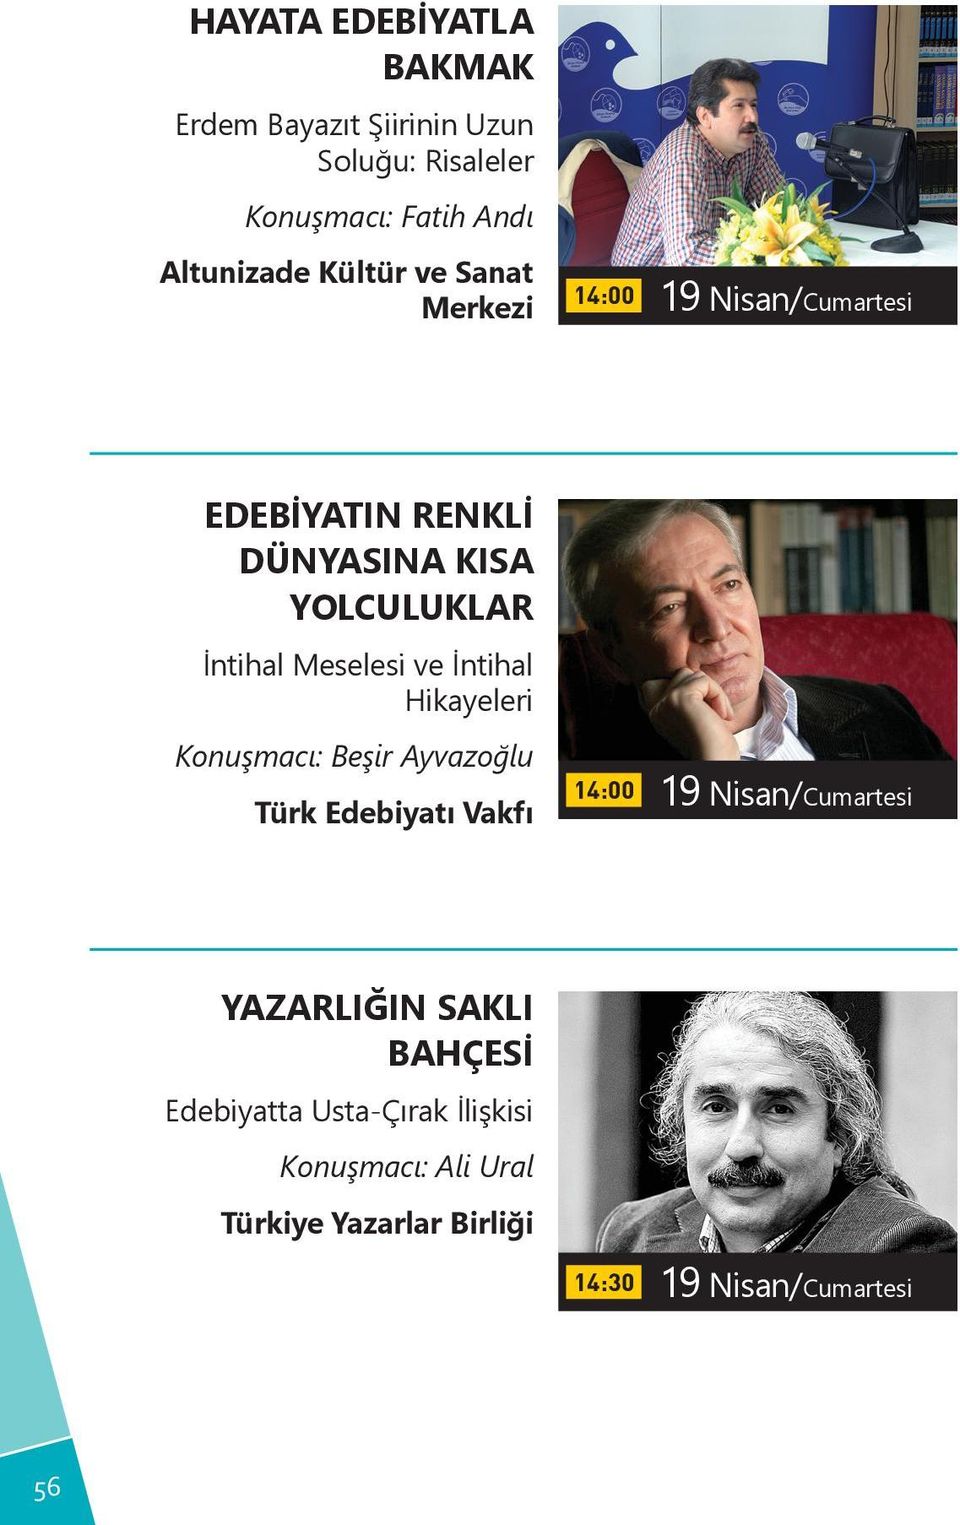 Meselesi ve İntihal Hikayeleri Konuşmacı: Beşir Ayvazoğlu Türk Edebiyatı Vakfı 14:00 19 Nisan/Cumartesi